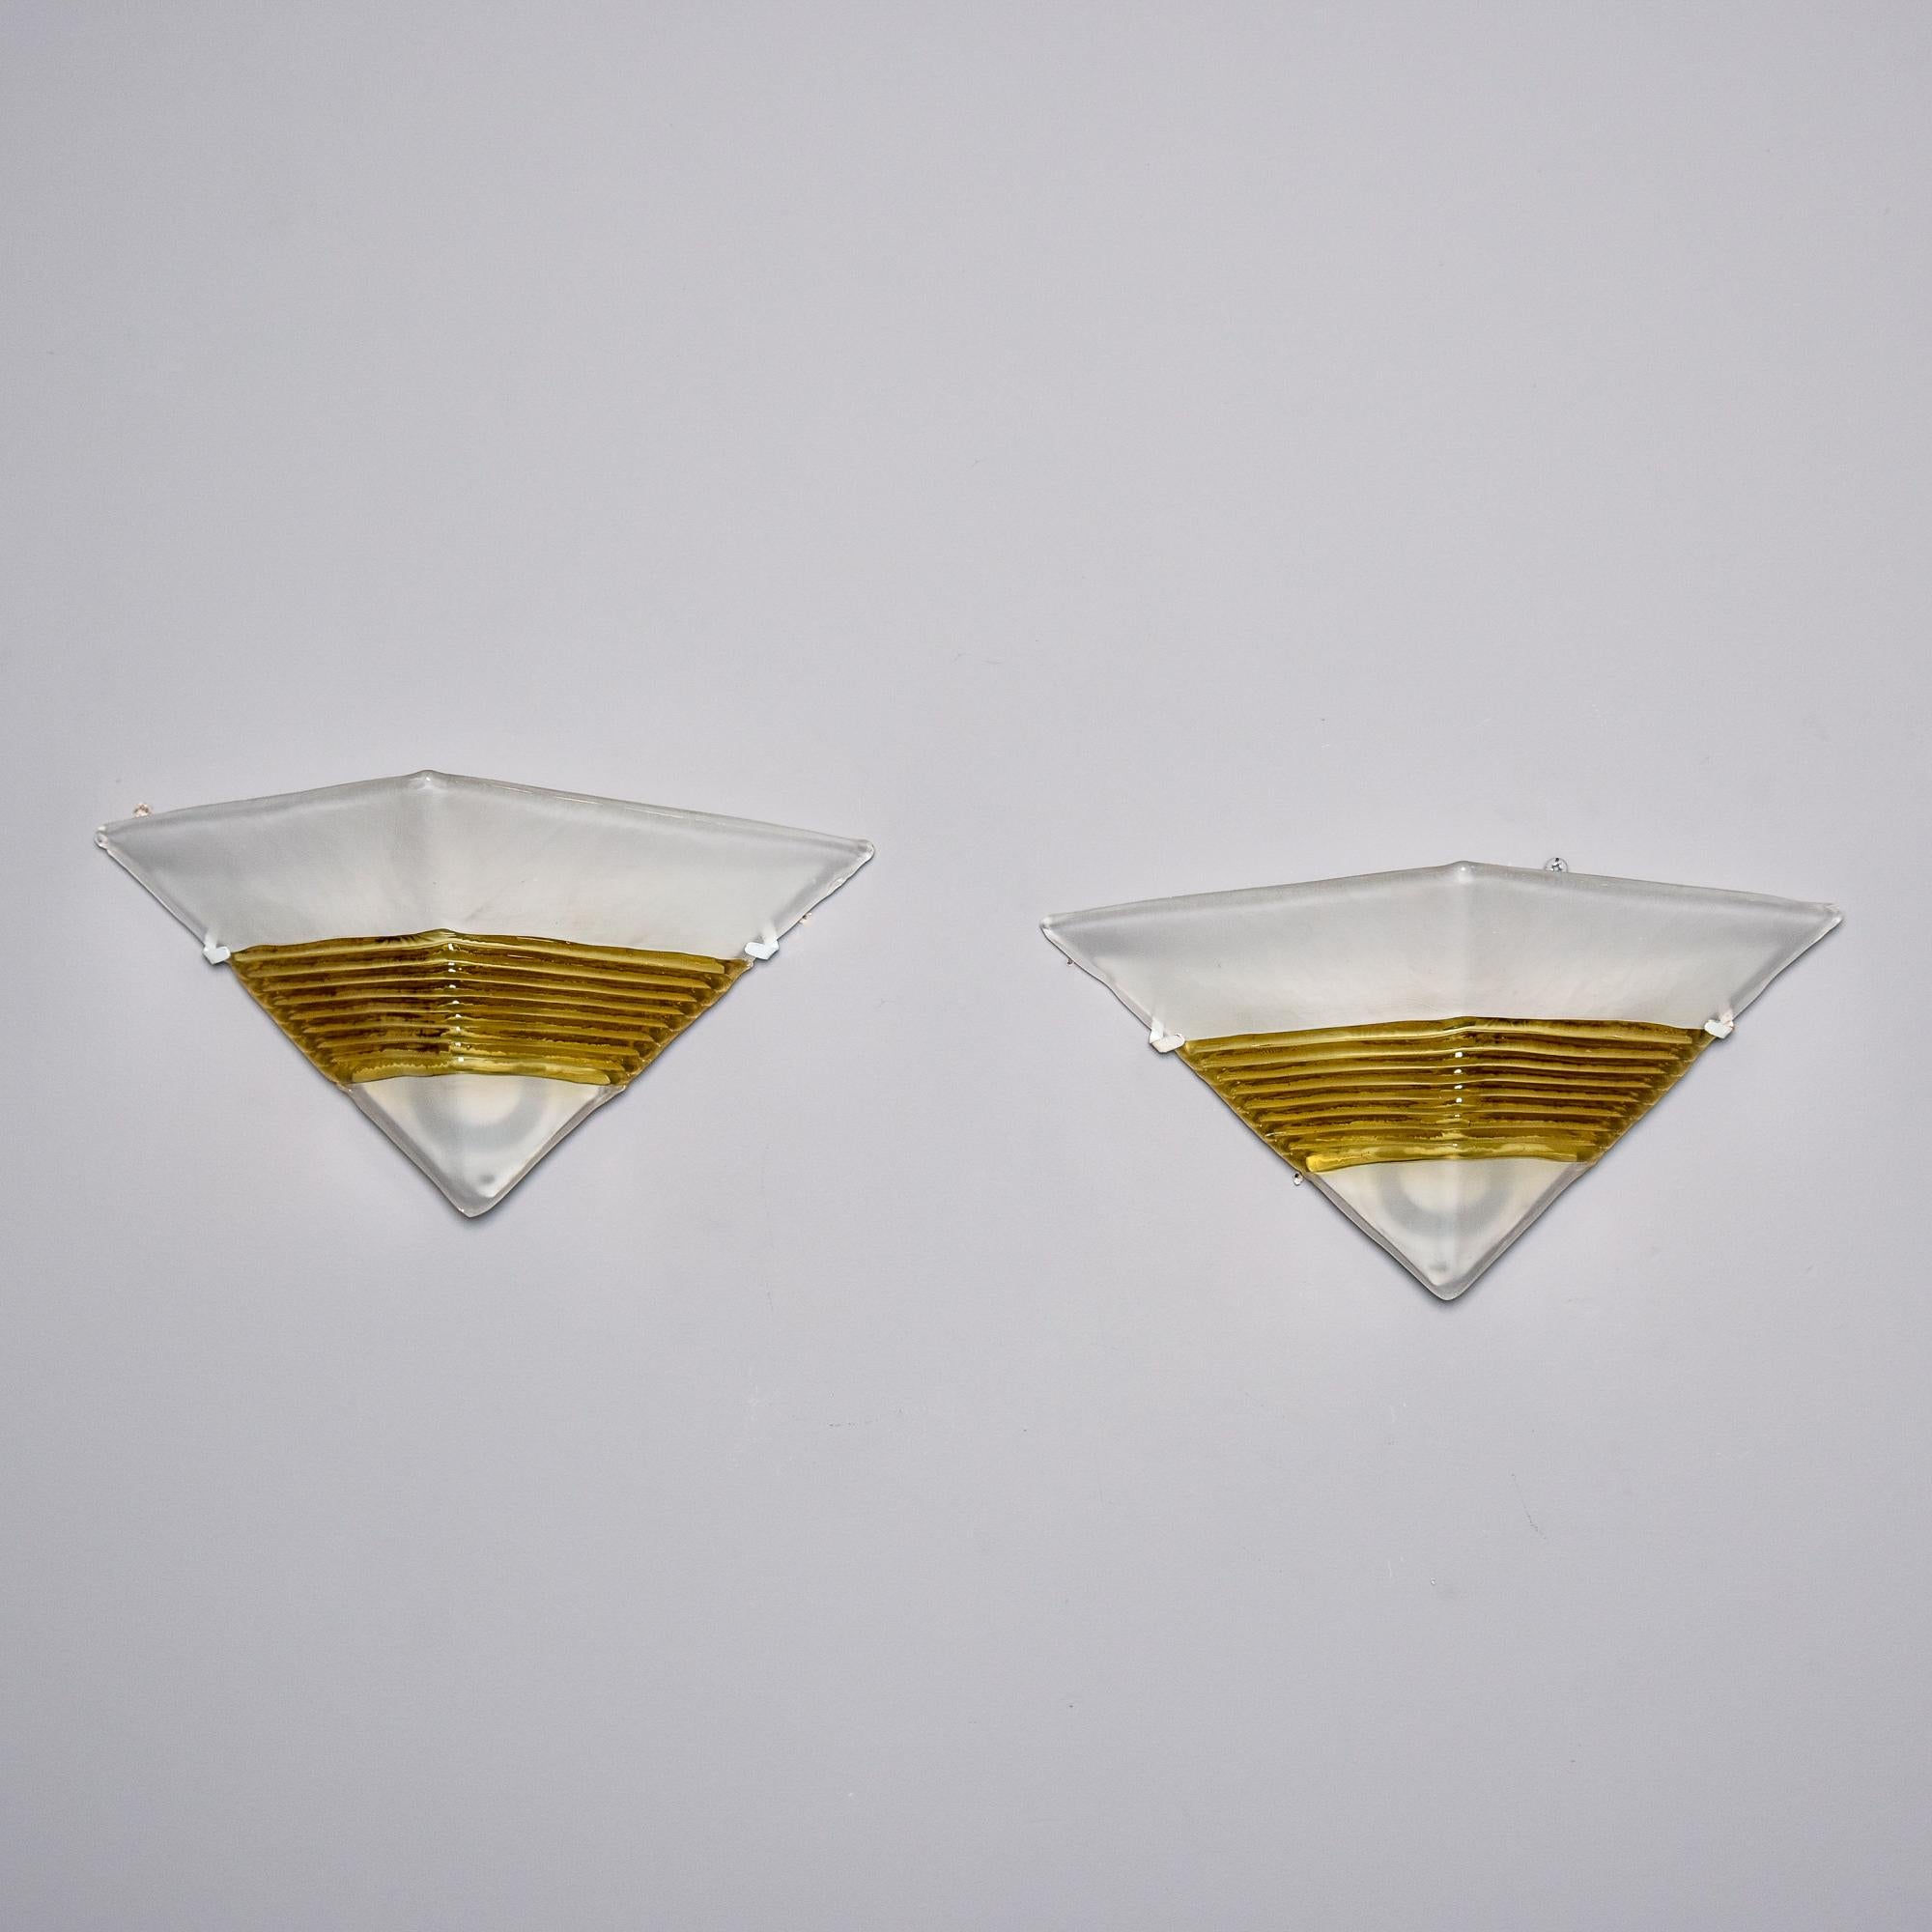 Vers les années 1990, paire d'appliques en verre de Murano par AV Mazzega. Chaque abat-jour triangulaire en verre blanc épais et presque opaque est rehaussé d'une bande dorée striée. Les abat-jours sont maintenus en place au ras du mur et recouvrent